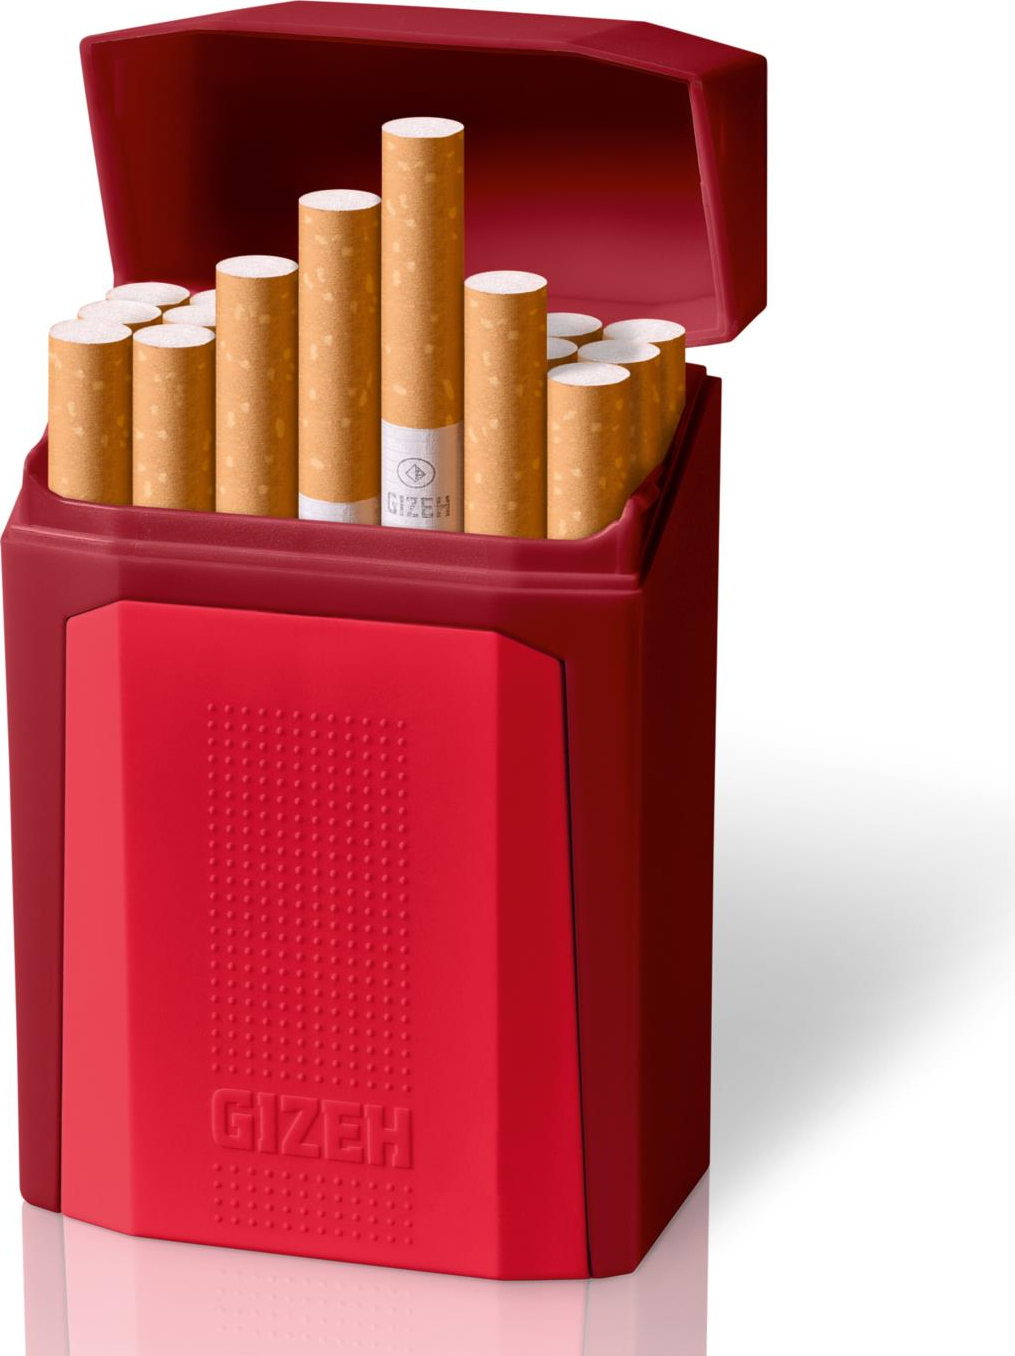 Gizeh  Flipcase Zigarettenbox  2 x aus Kunststoff für ca.21 Zigaretten 